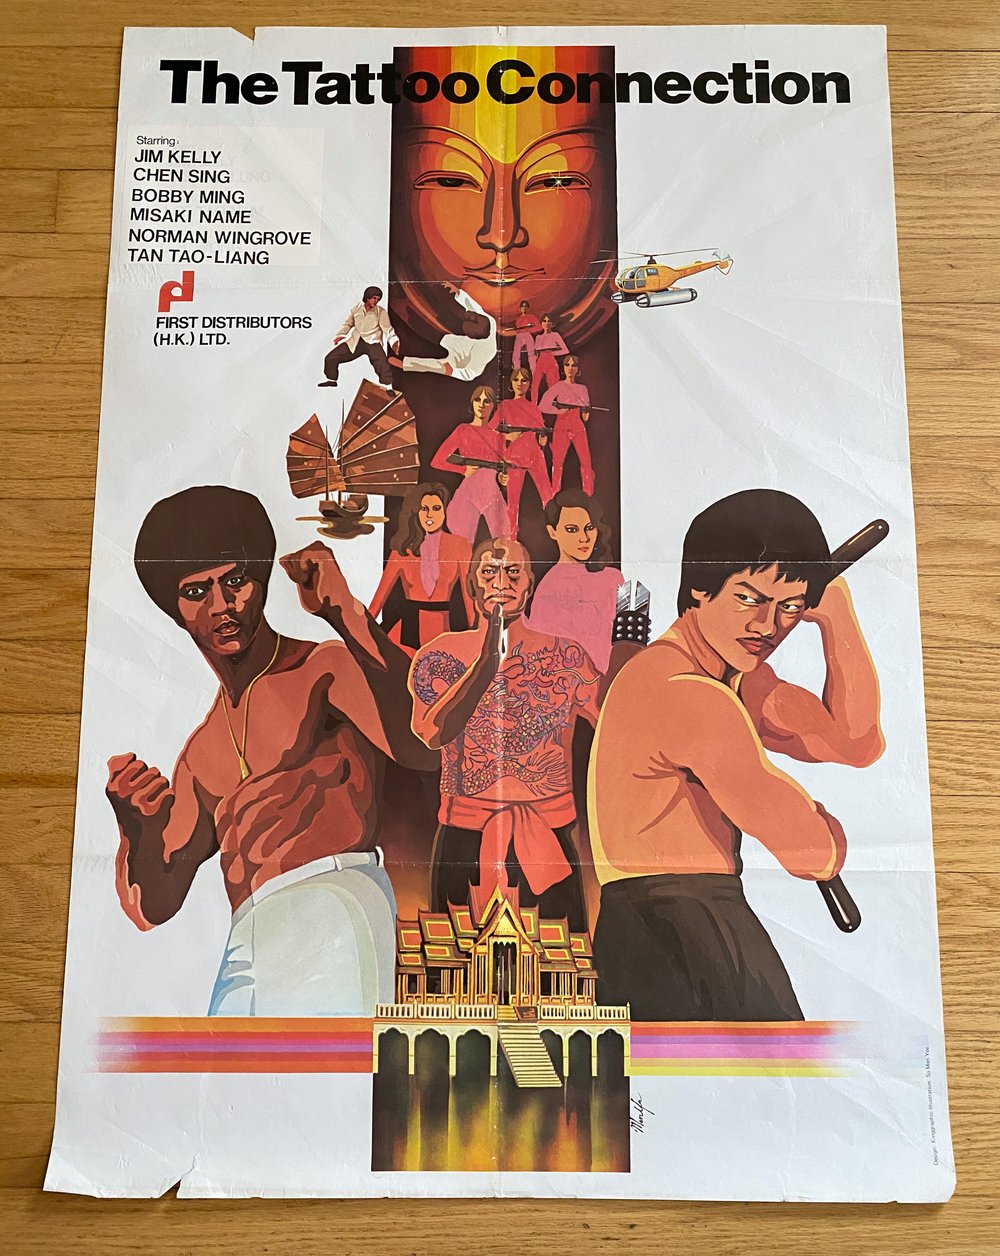 1979 BLACK BELT JONES II: THE TATTOO CONNECTION Original Hong Kong One Sheet Movie Poster